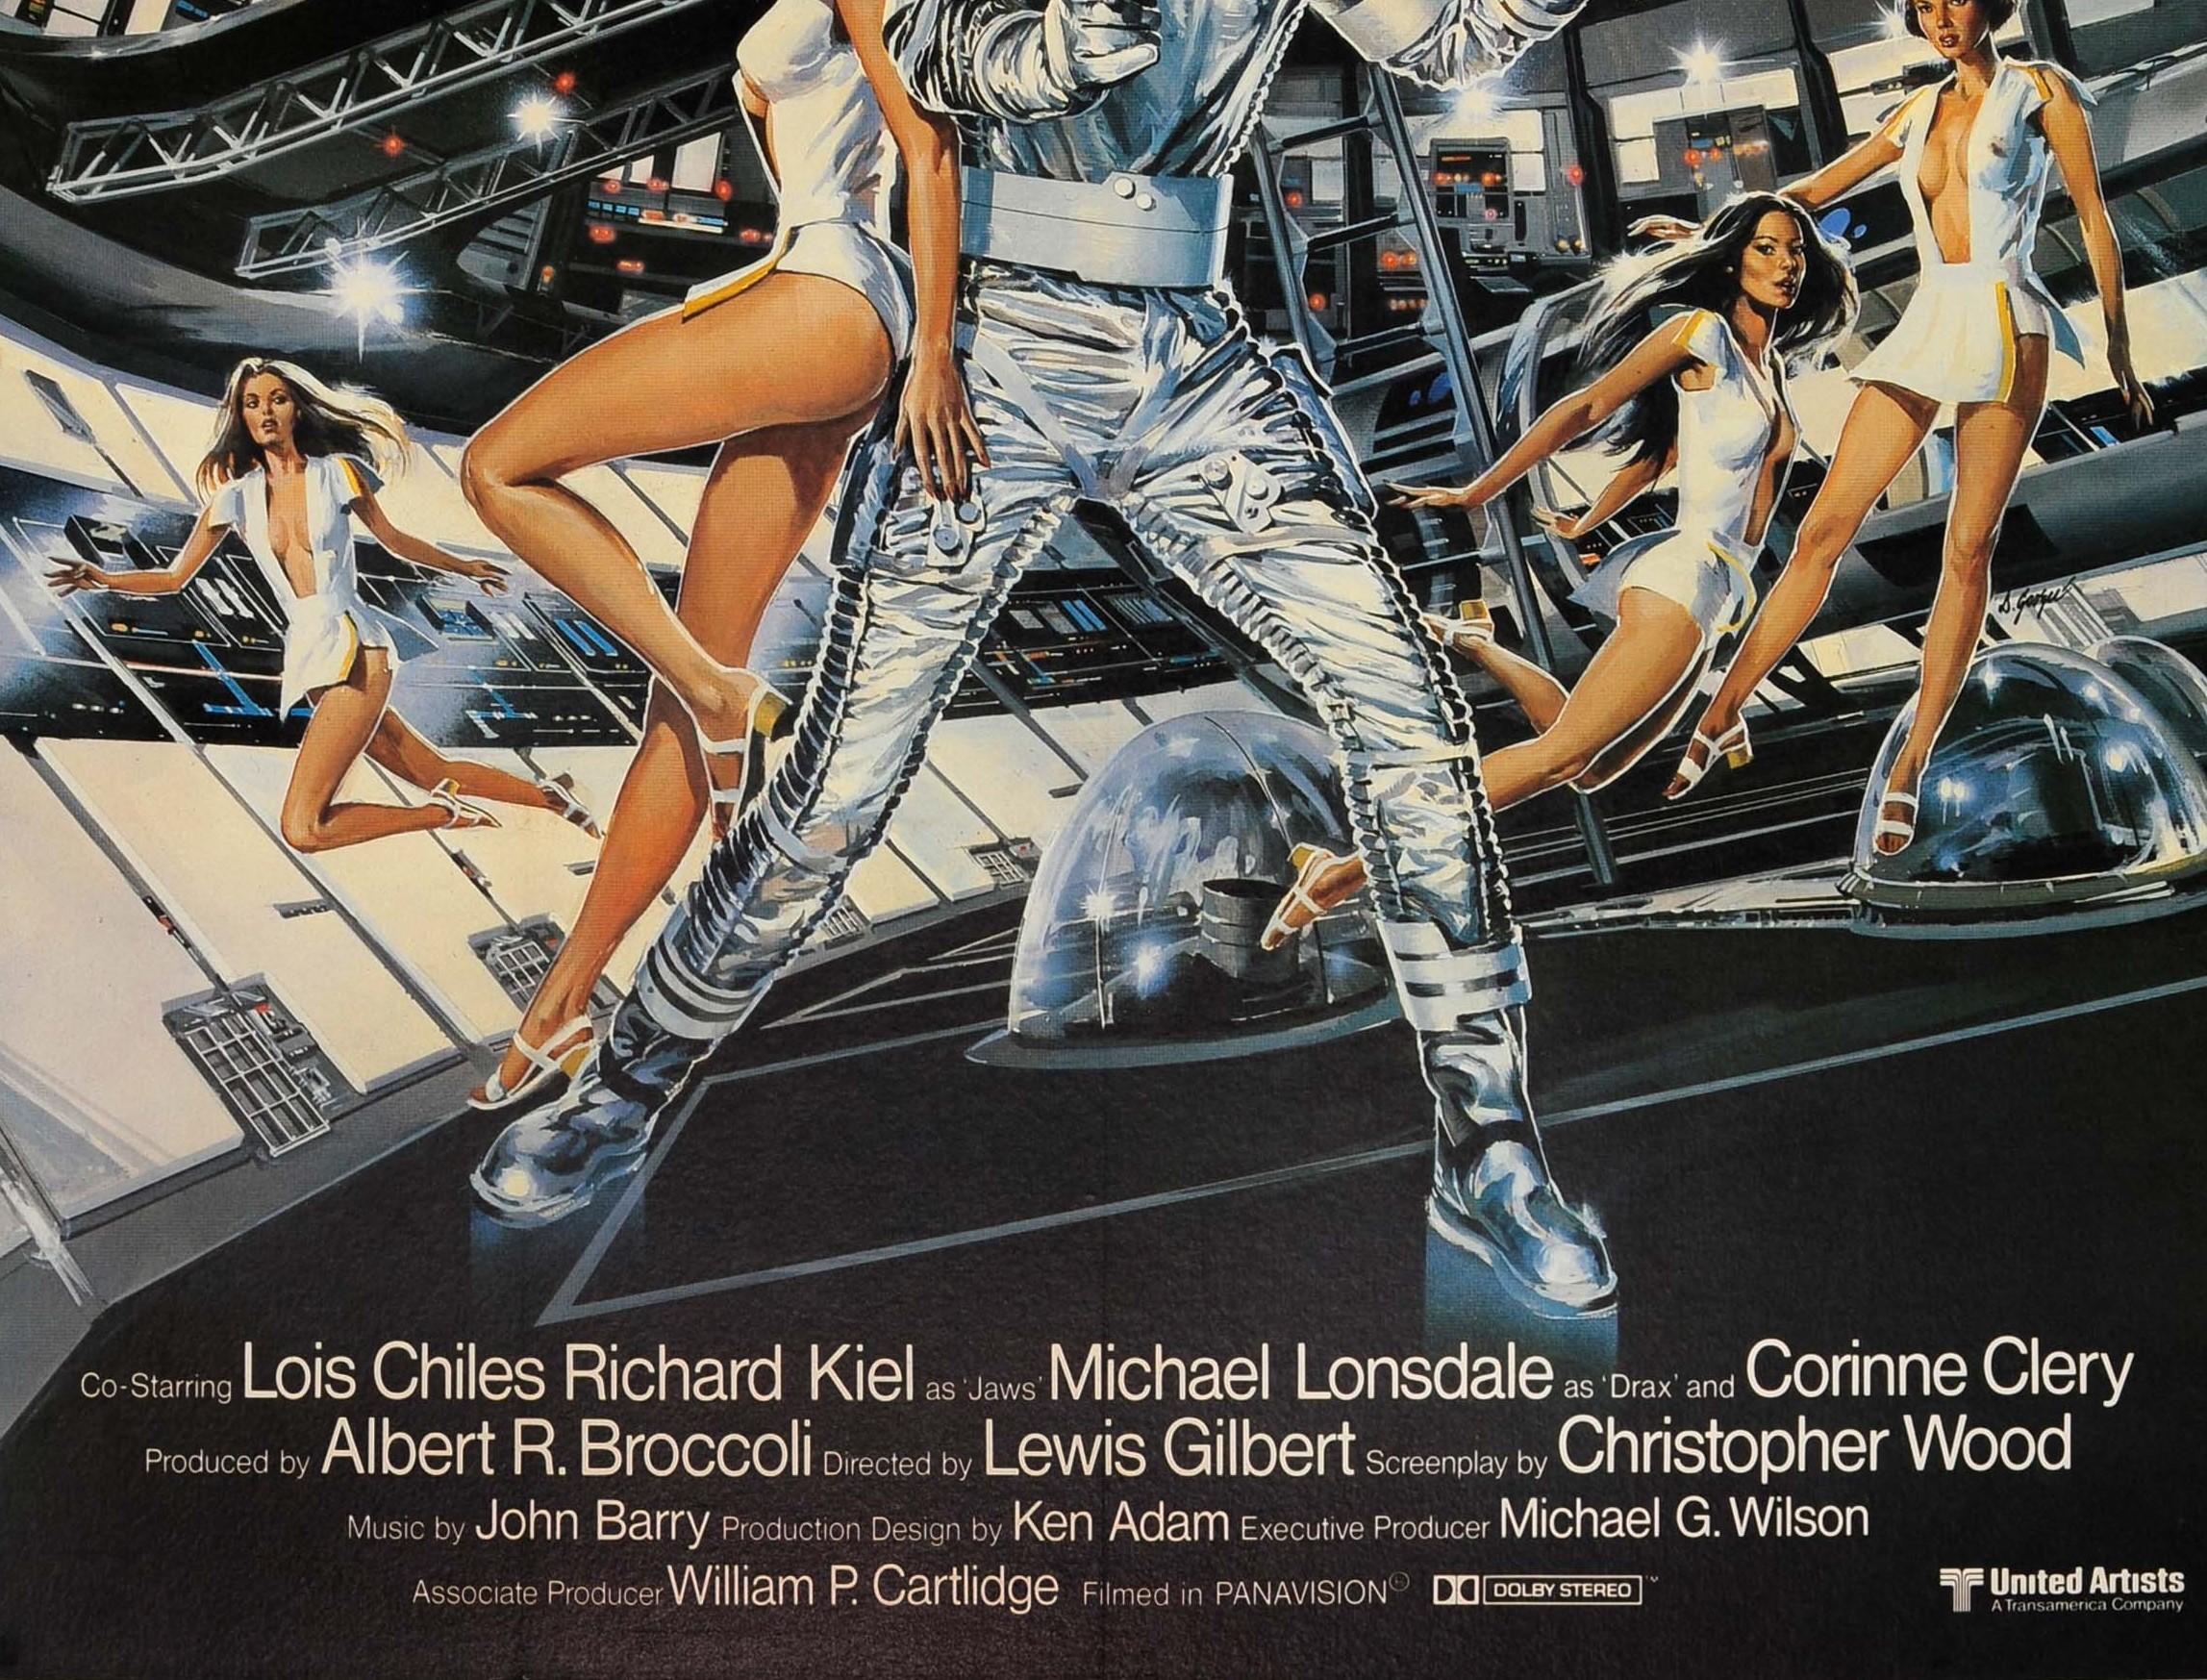 Affiche de cinéma originale pour le film de James Bond 007 Moonraker avec Roger Moore, Lois Chiles (Holly Goodhead), Michael Lonsdale (Hugo Drax) et Richard Kiel (Jaws) - L'espace appartient désormais à 007 - réalisé par Lewis Gilbert. Grande image